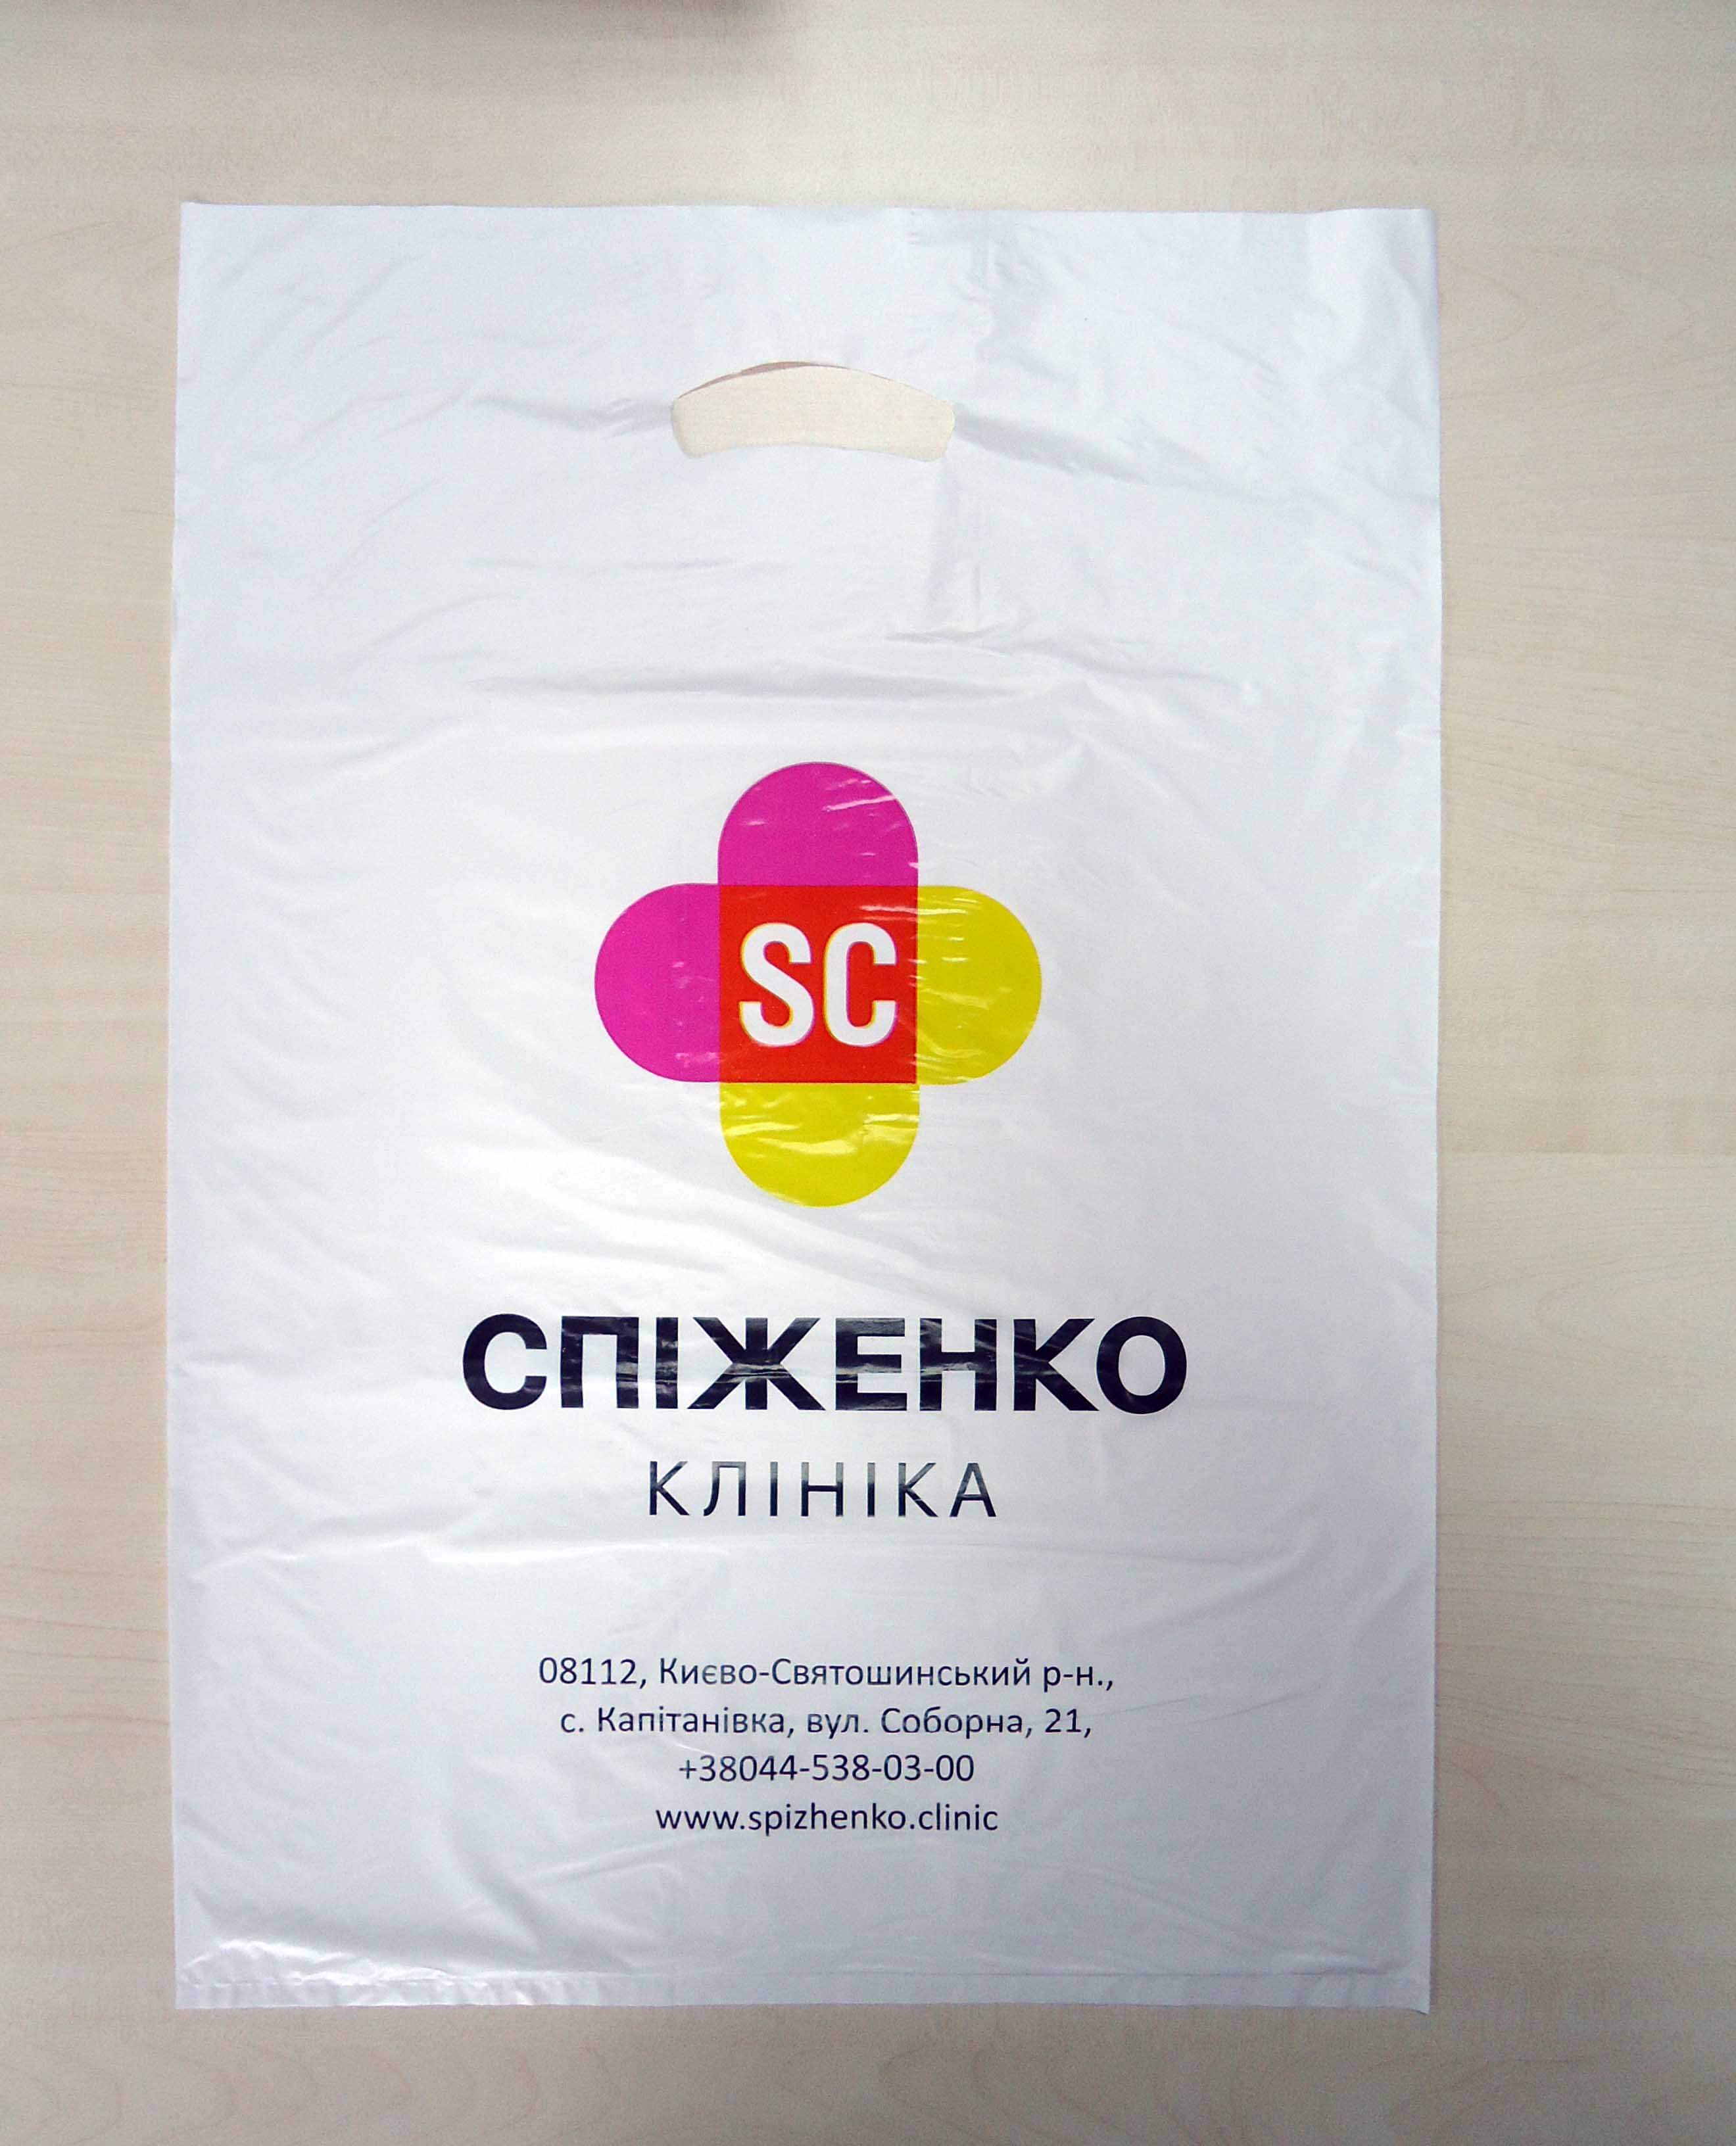 Пакет с петлевой ручкой и напечатанным логотипом Chernigov Package - Фото DSC03532